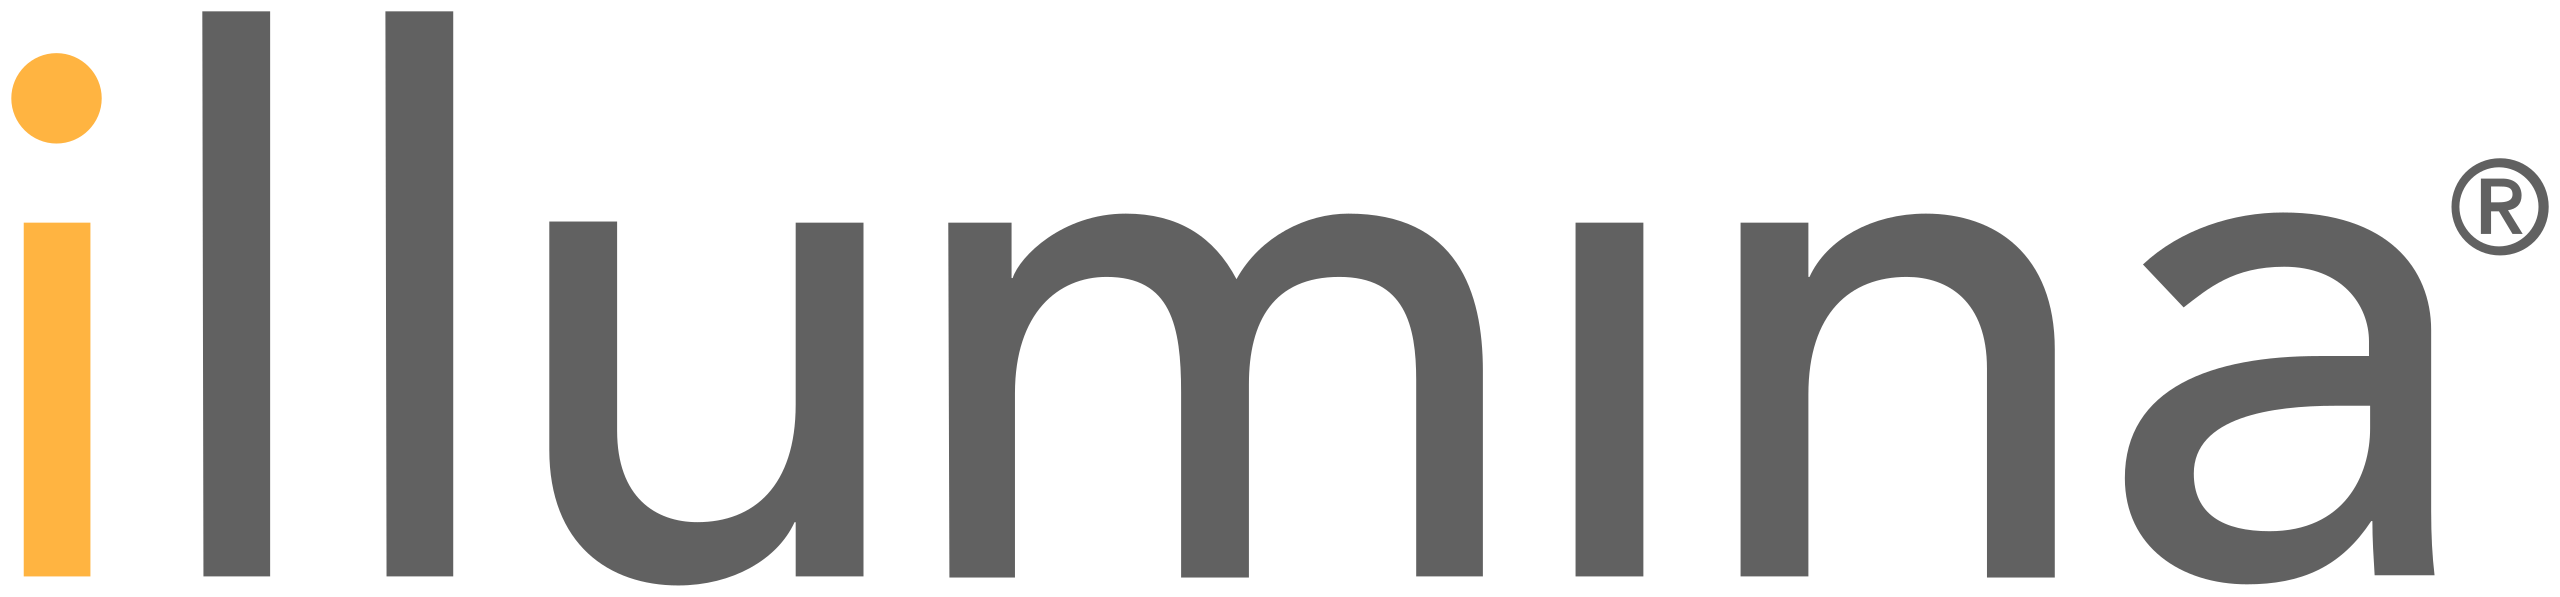 Illumina лого